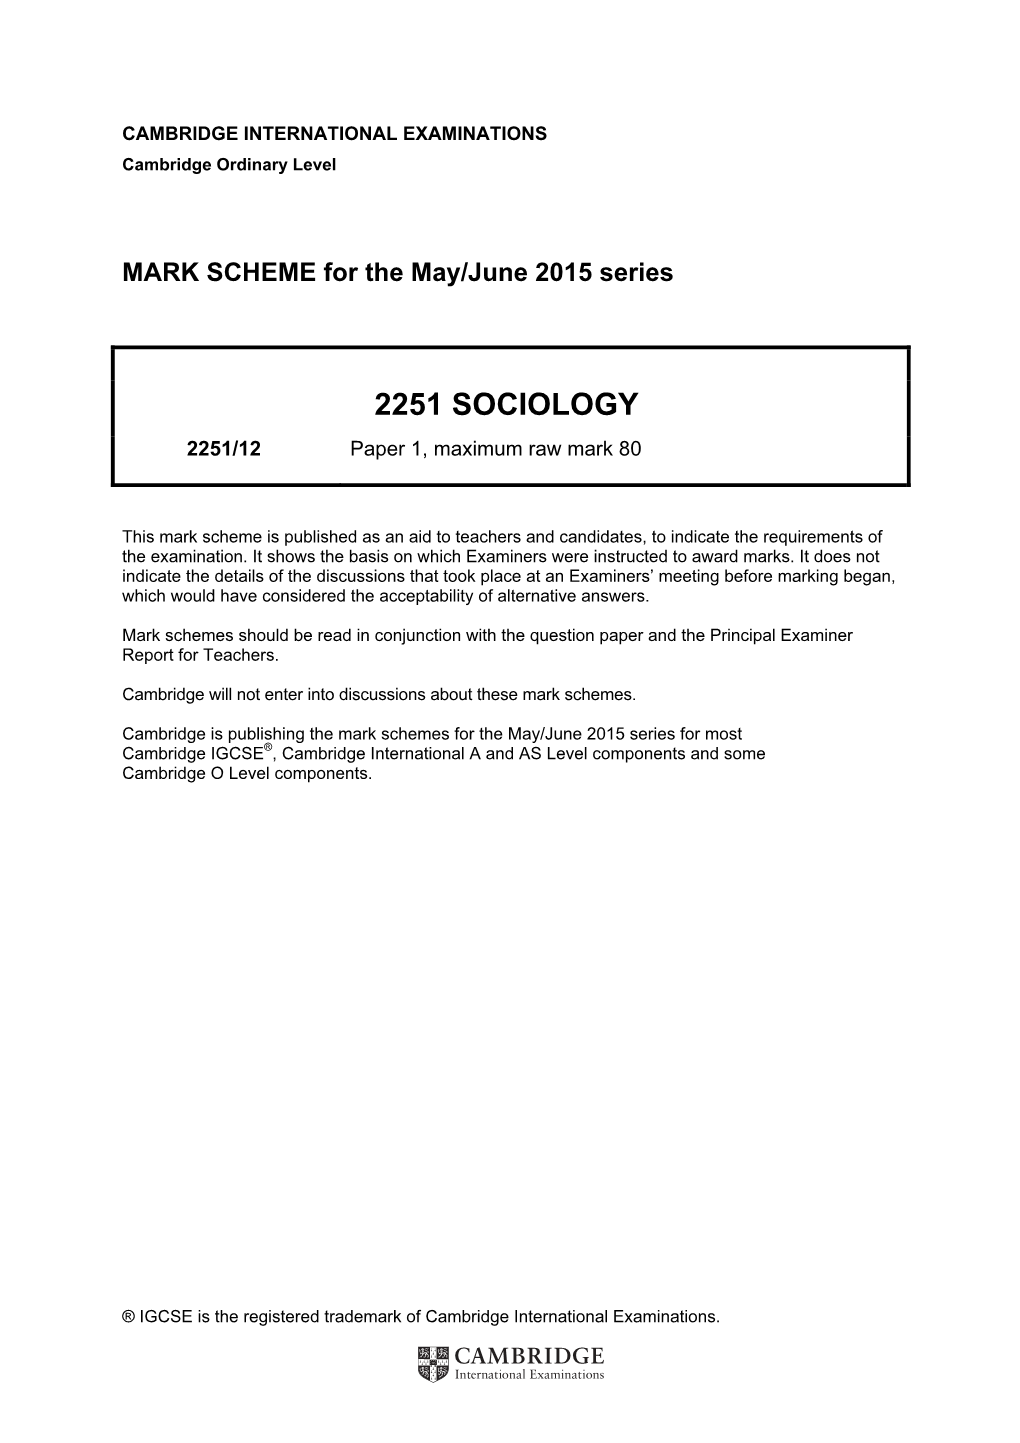 2251 SOCIOLOGY 2251/12 Paper 1, Maximum Raw Mark 80